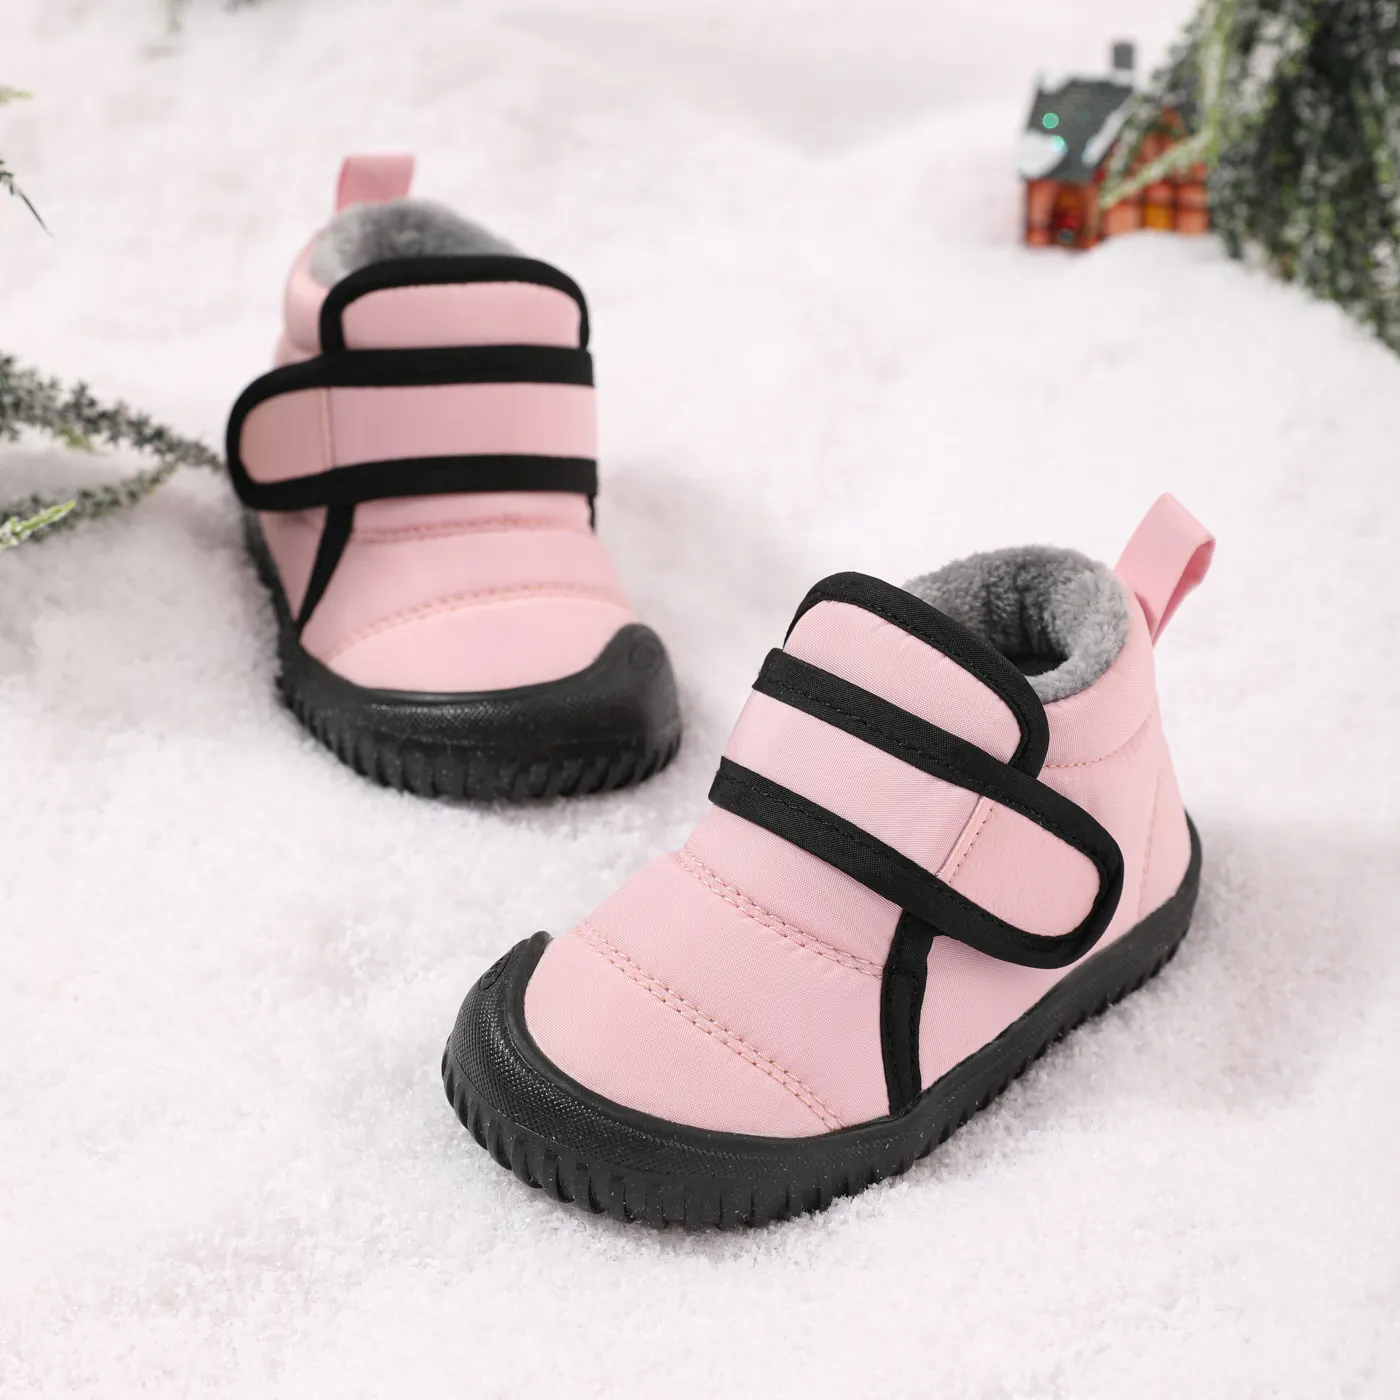 Toddler Waterproof Fleece Lined Snow Boots